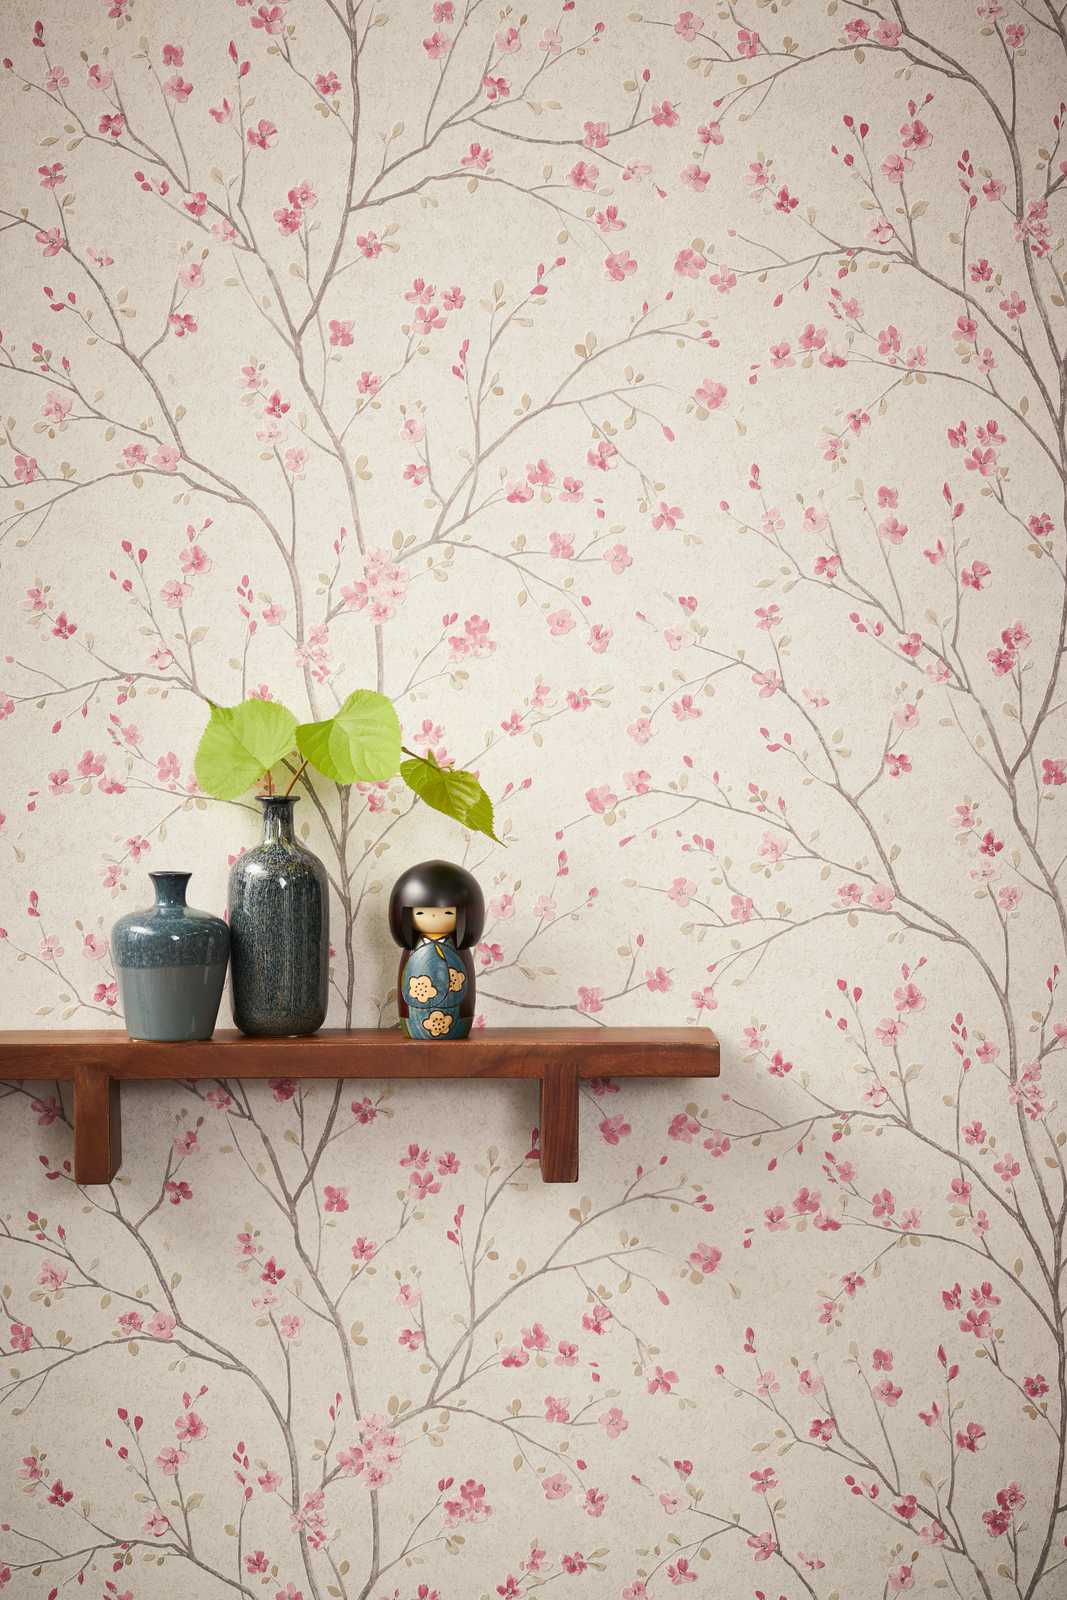             Vliestapete mit Kirschblüten Design im Asian Style – Braun, Rosa, Weiß
        